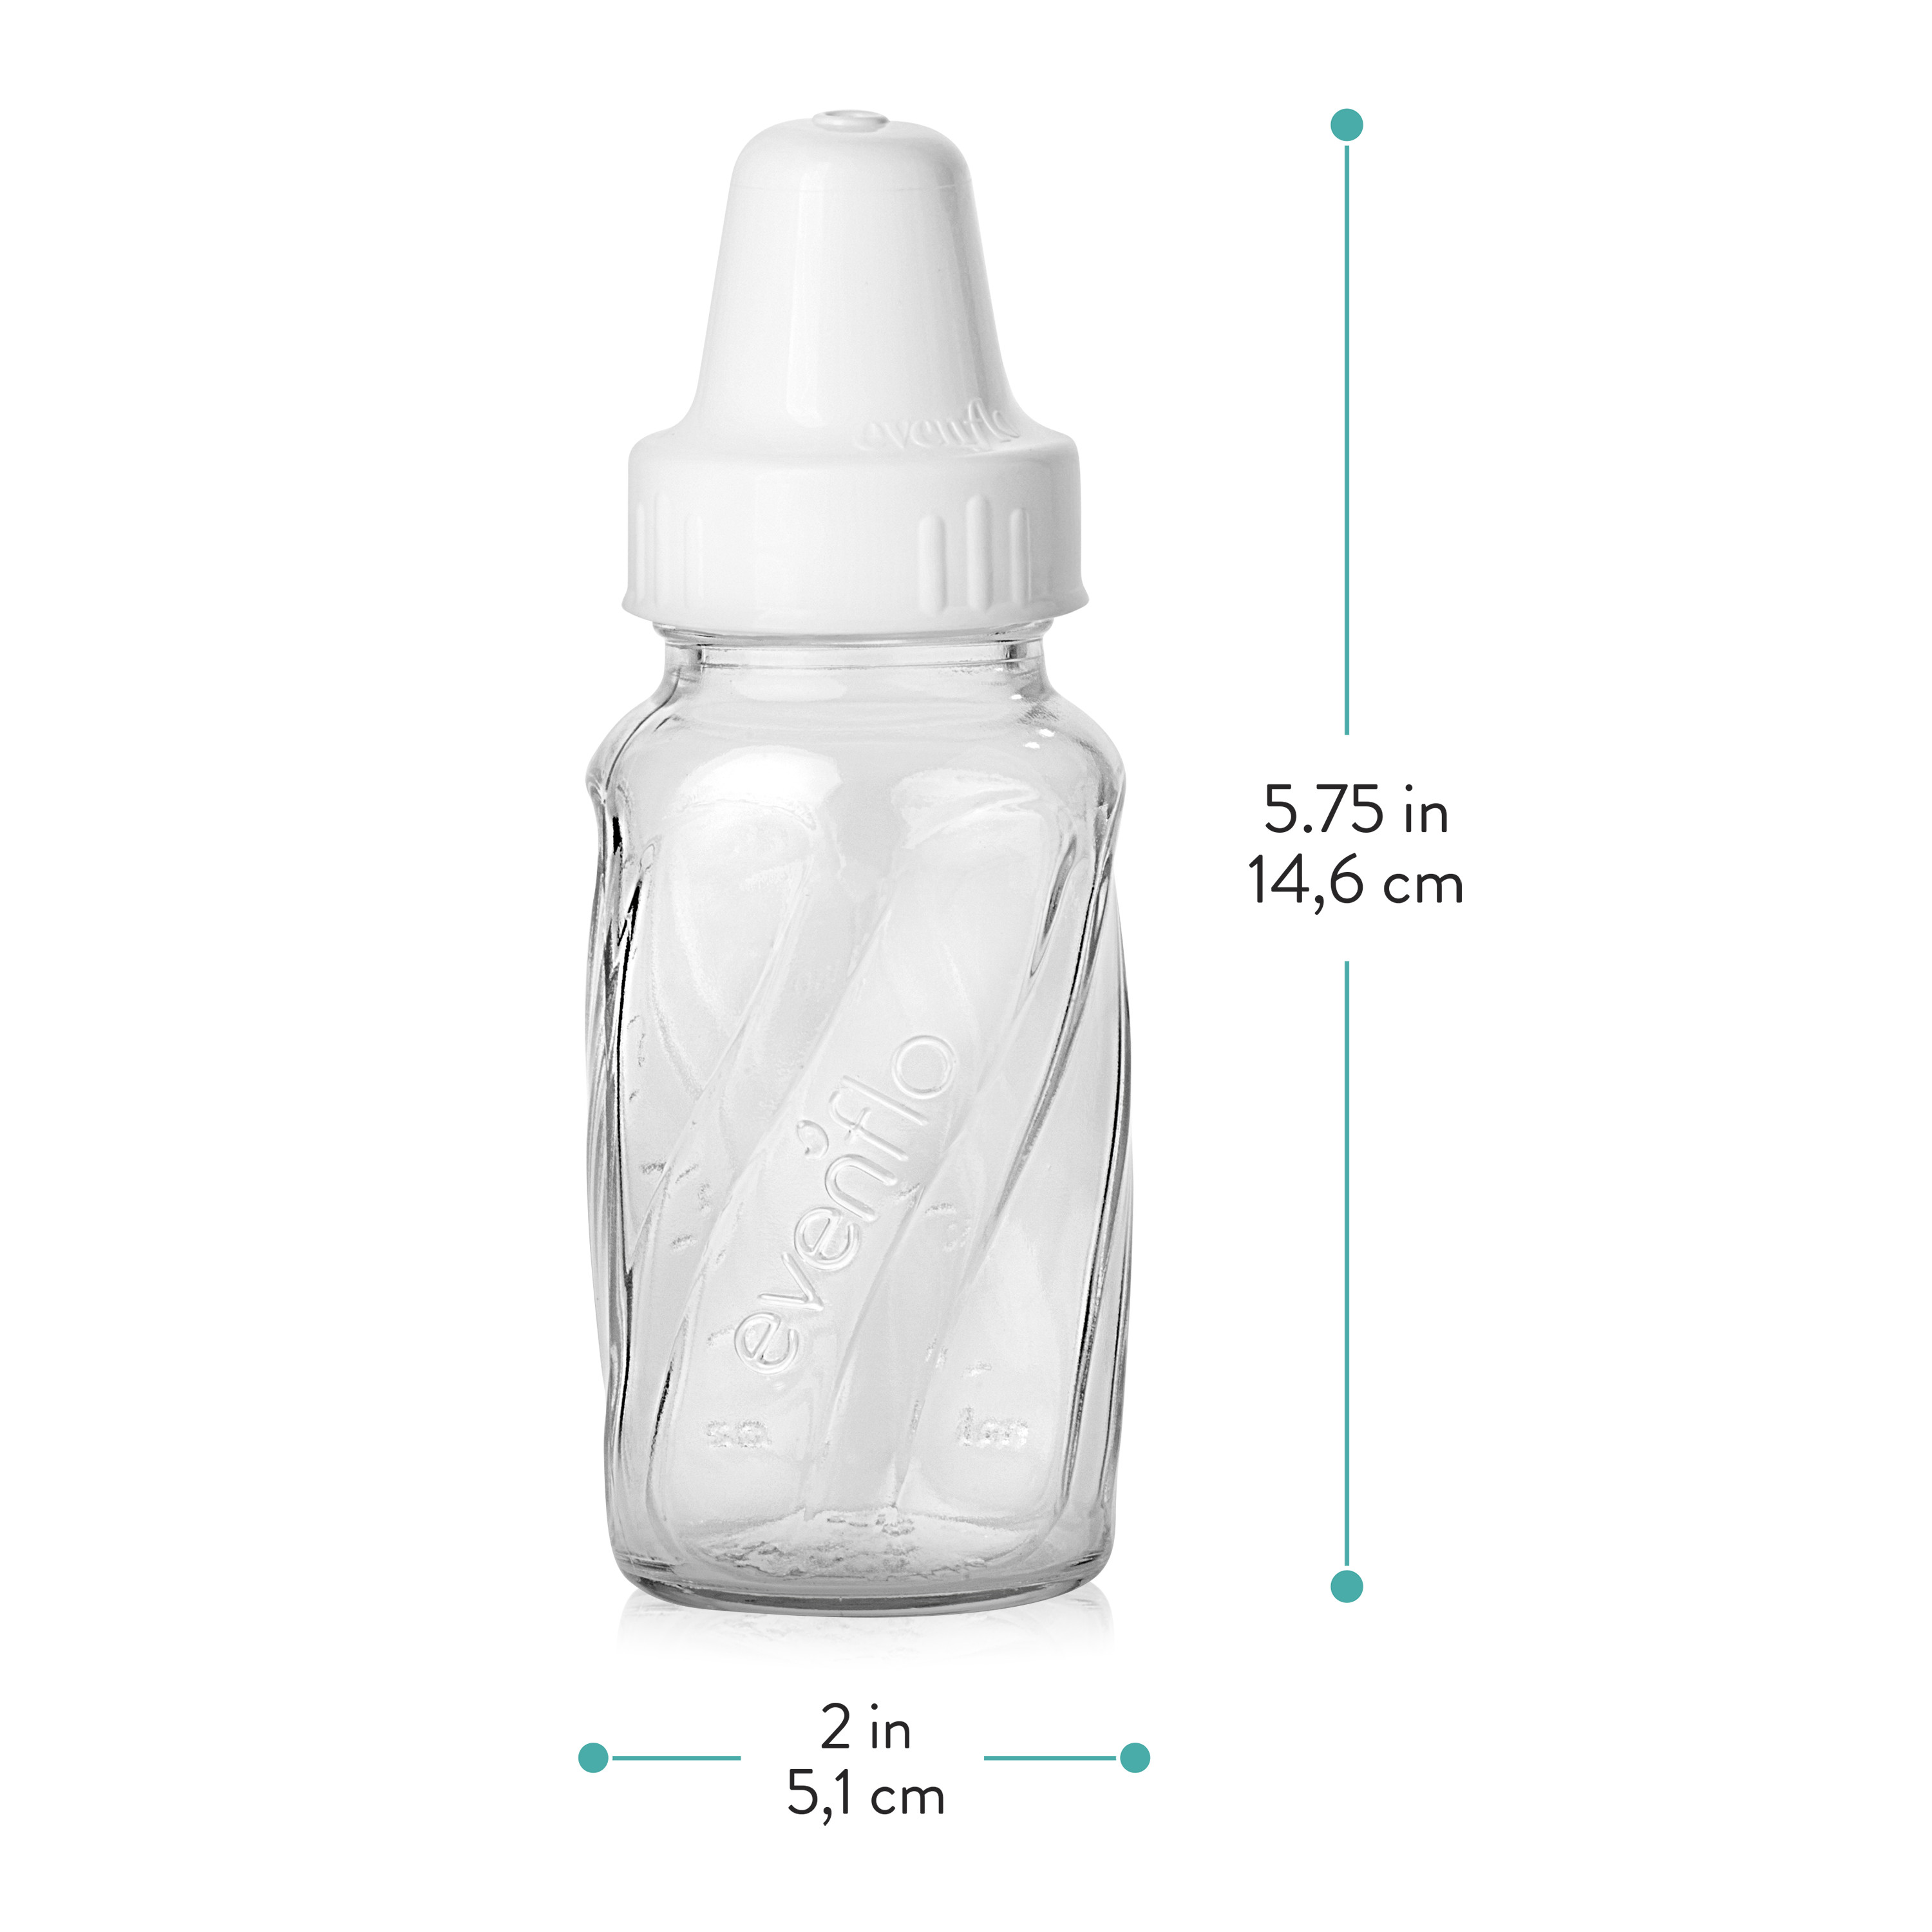 Evenflo 3-Pack Customflow Glass Bottles (4 oz.) - ivory, one size - image 2 of 5